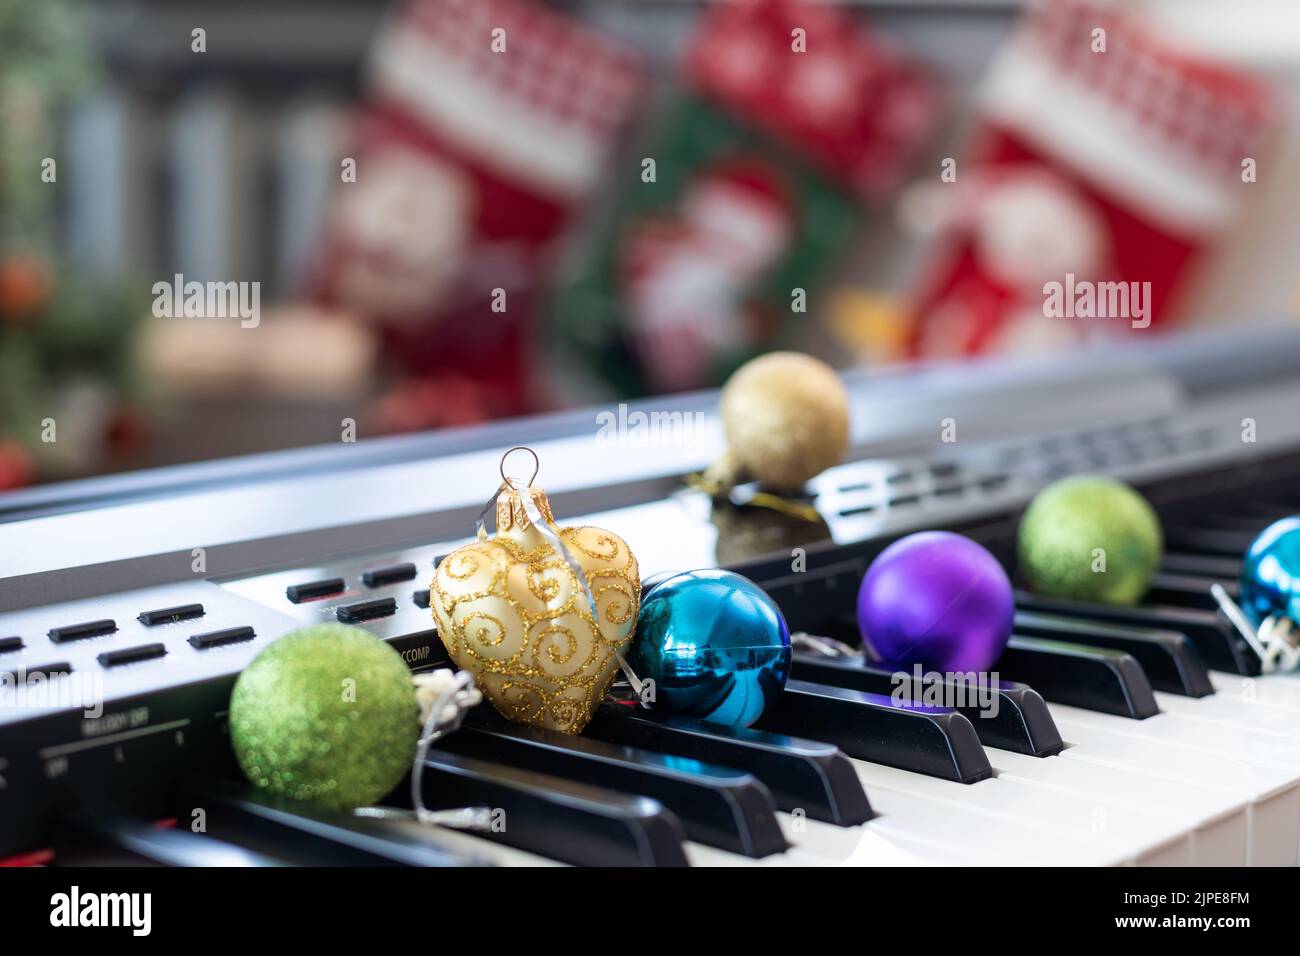 Clavier piano avec décoration de Noël, closeup Banque D'Images